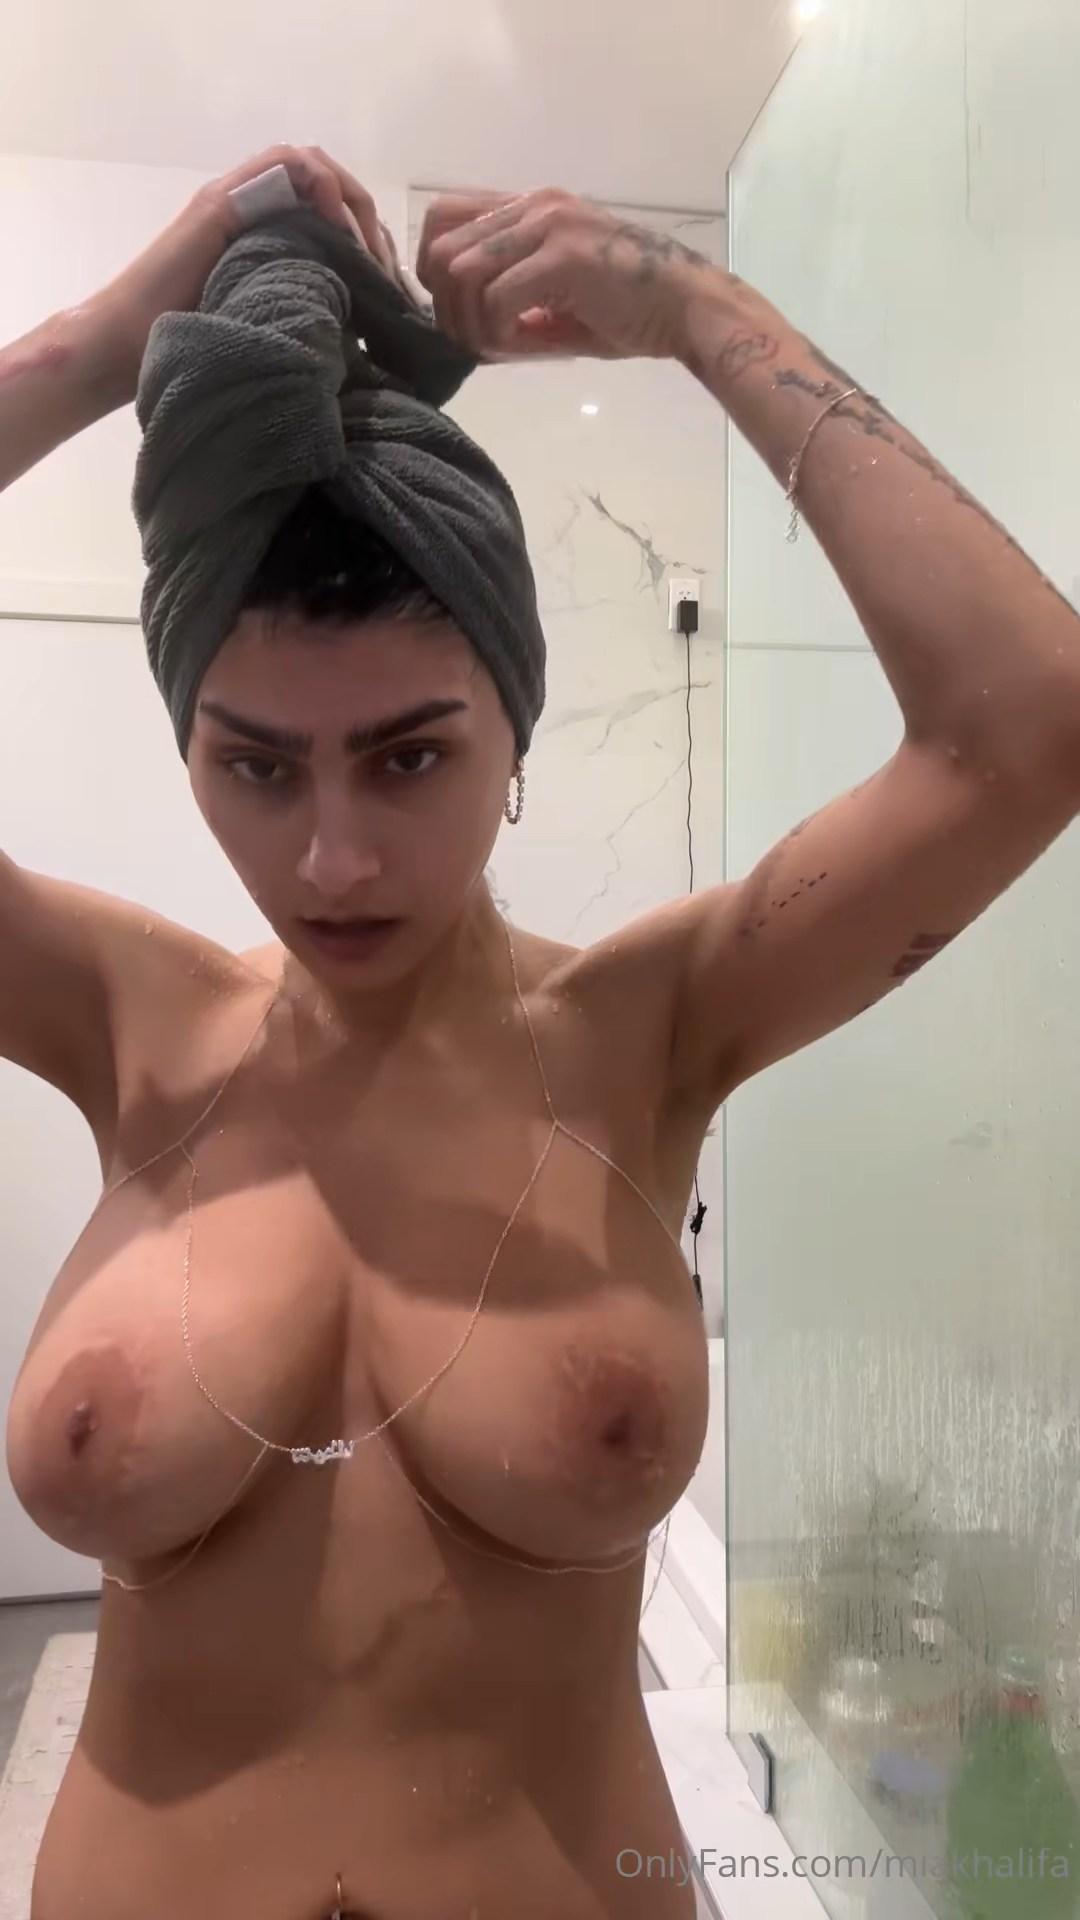 mia khalifa nude shower towel onlyfans video leaked zlrlui